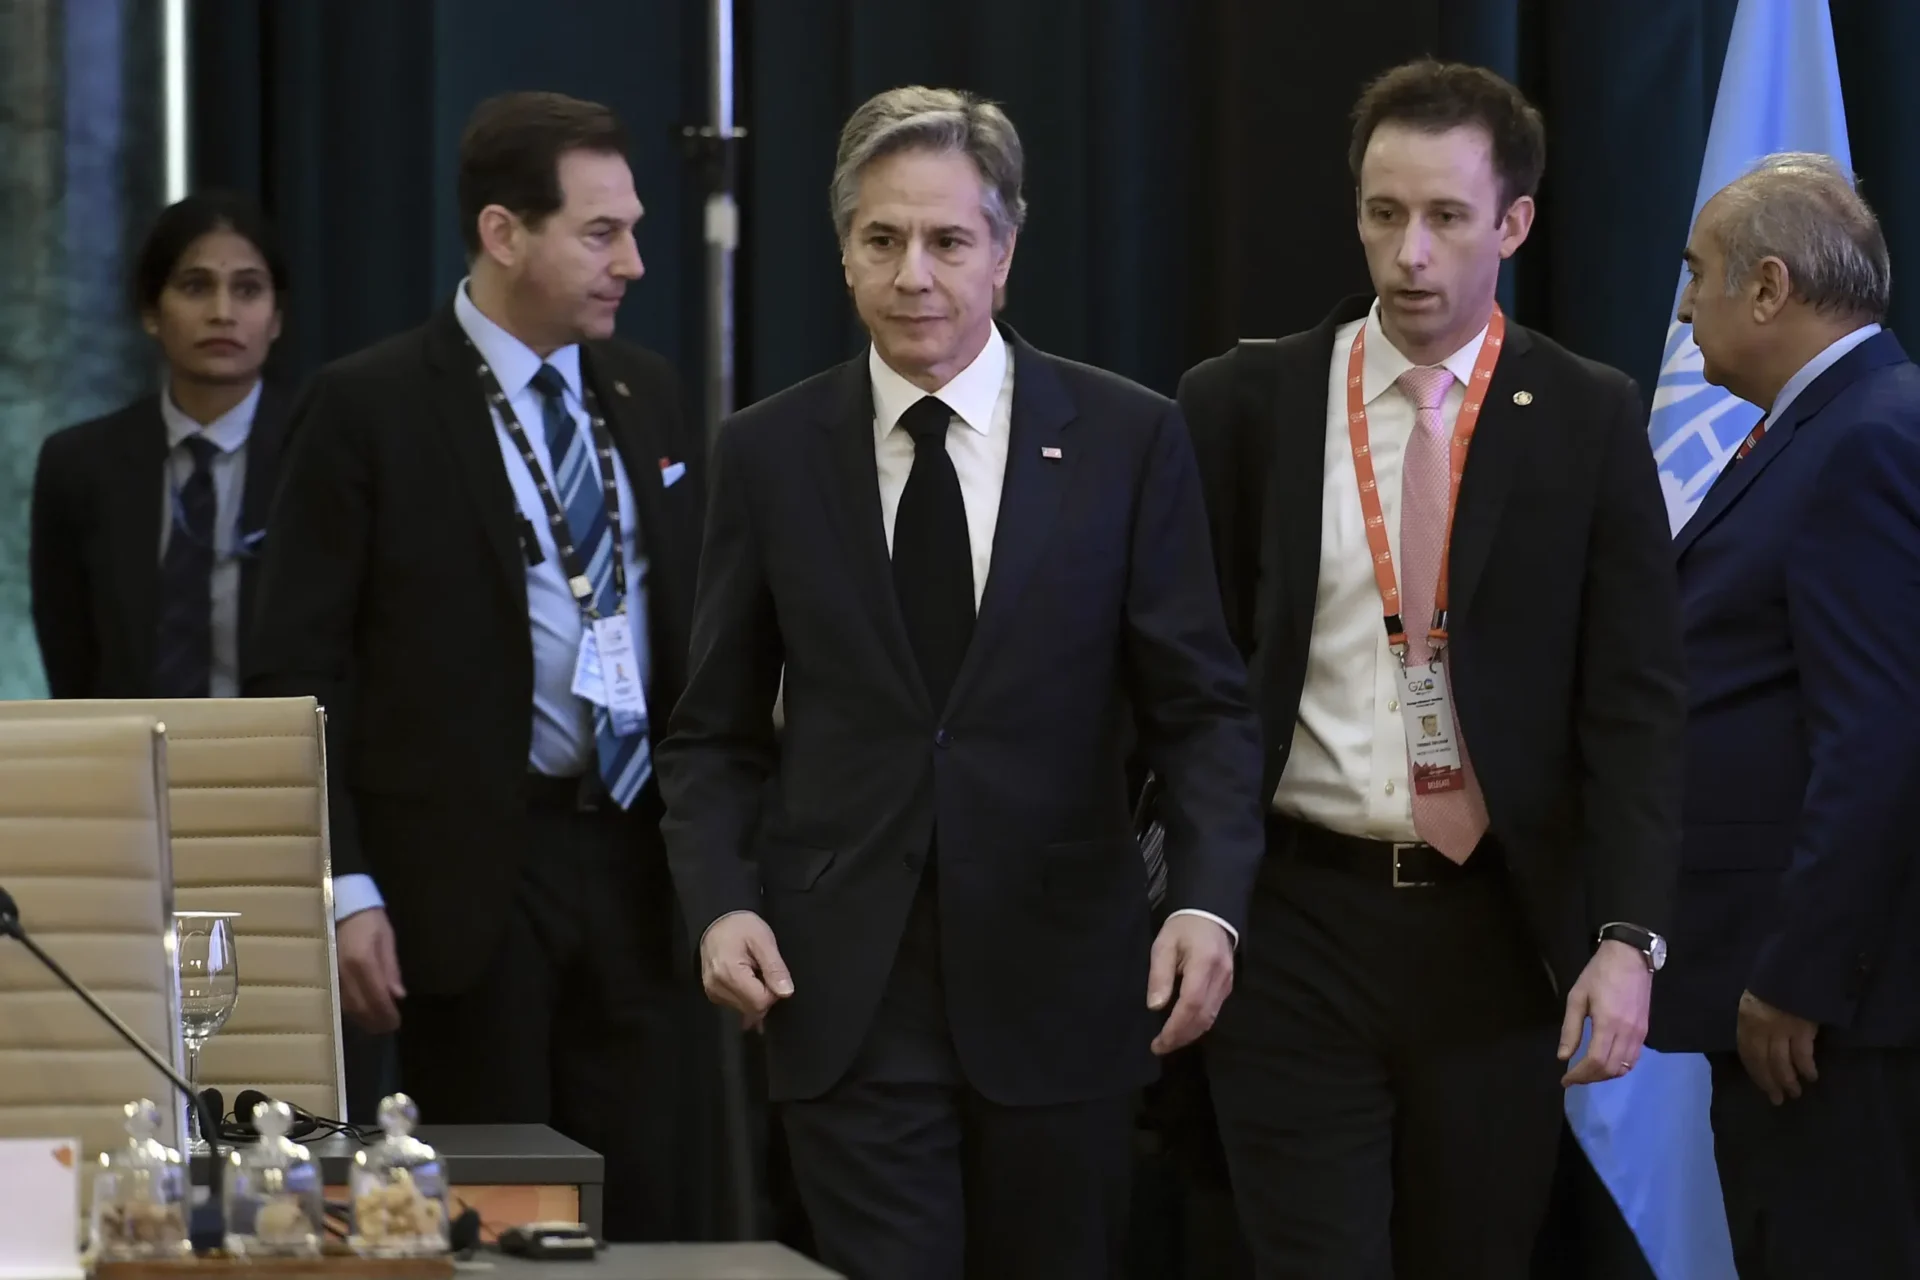 Ministros de Relaciones Exteriores fracturados del G20 lidian con divisiones cada vez más profundas